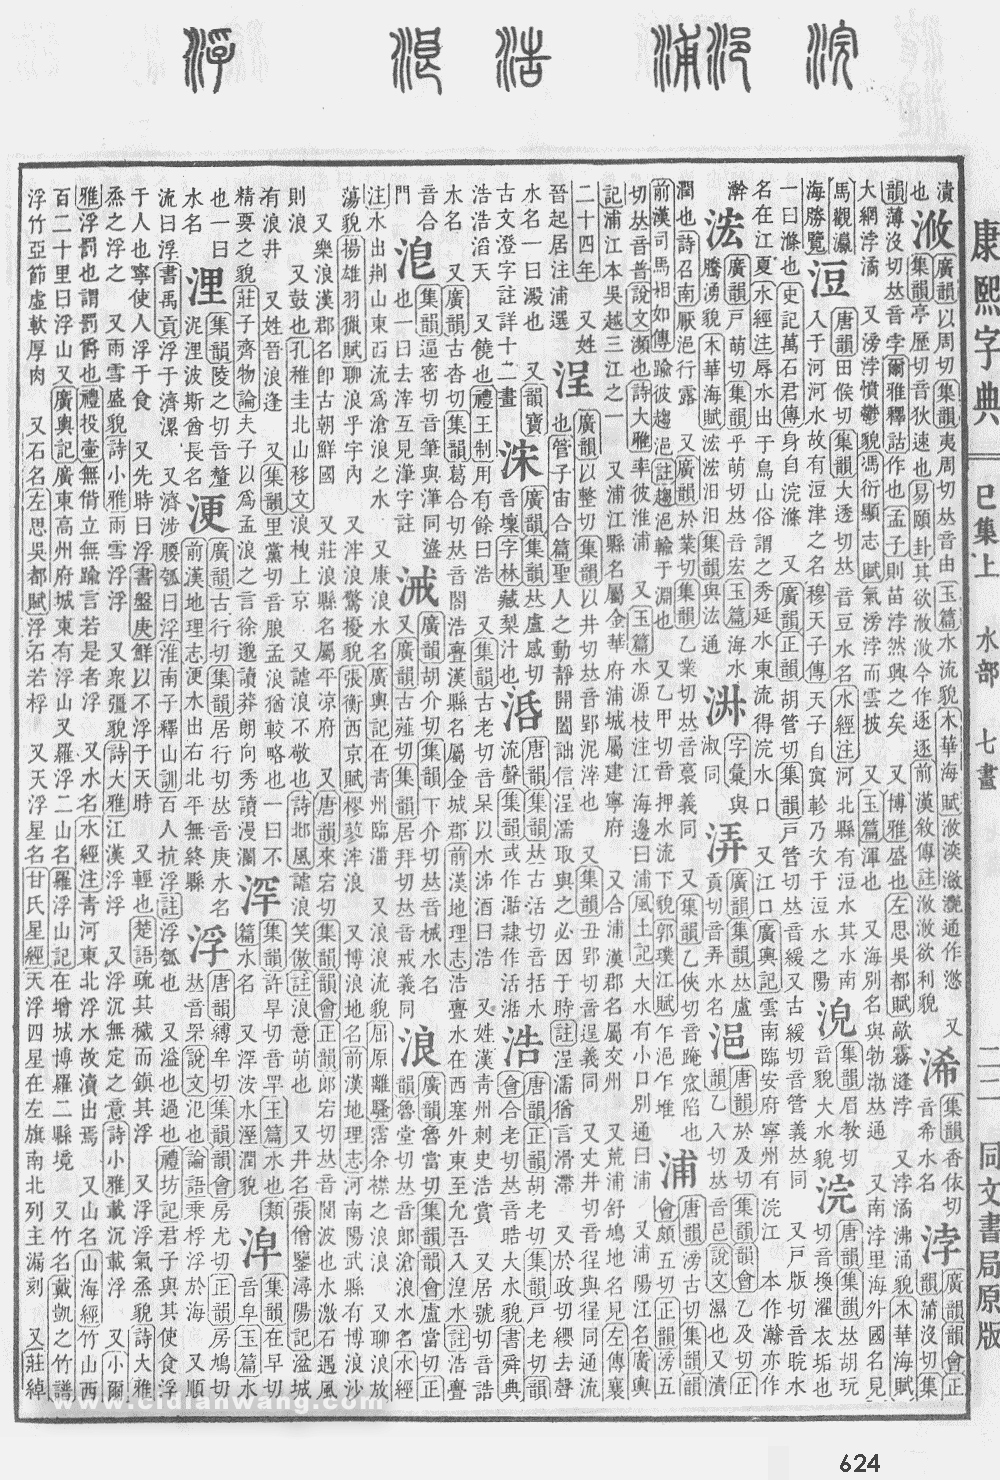 康熙字典掃描版第624頁